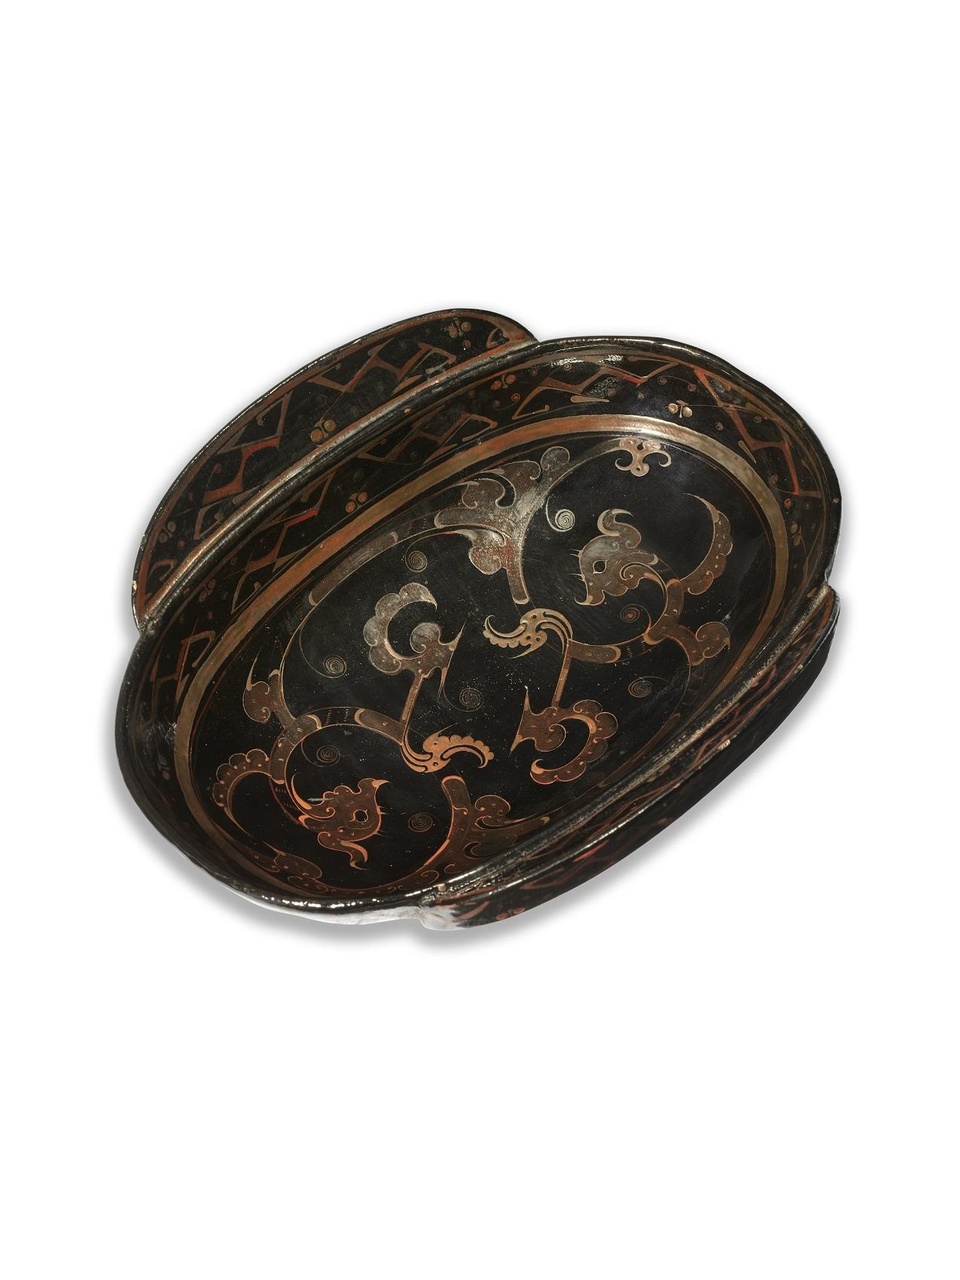 戰國至西漢早期 漆繪雙龍鳥紋耳杯
估價：500,000-600,000港元
